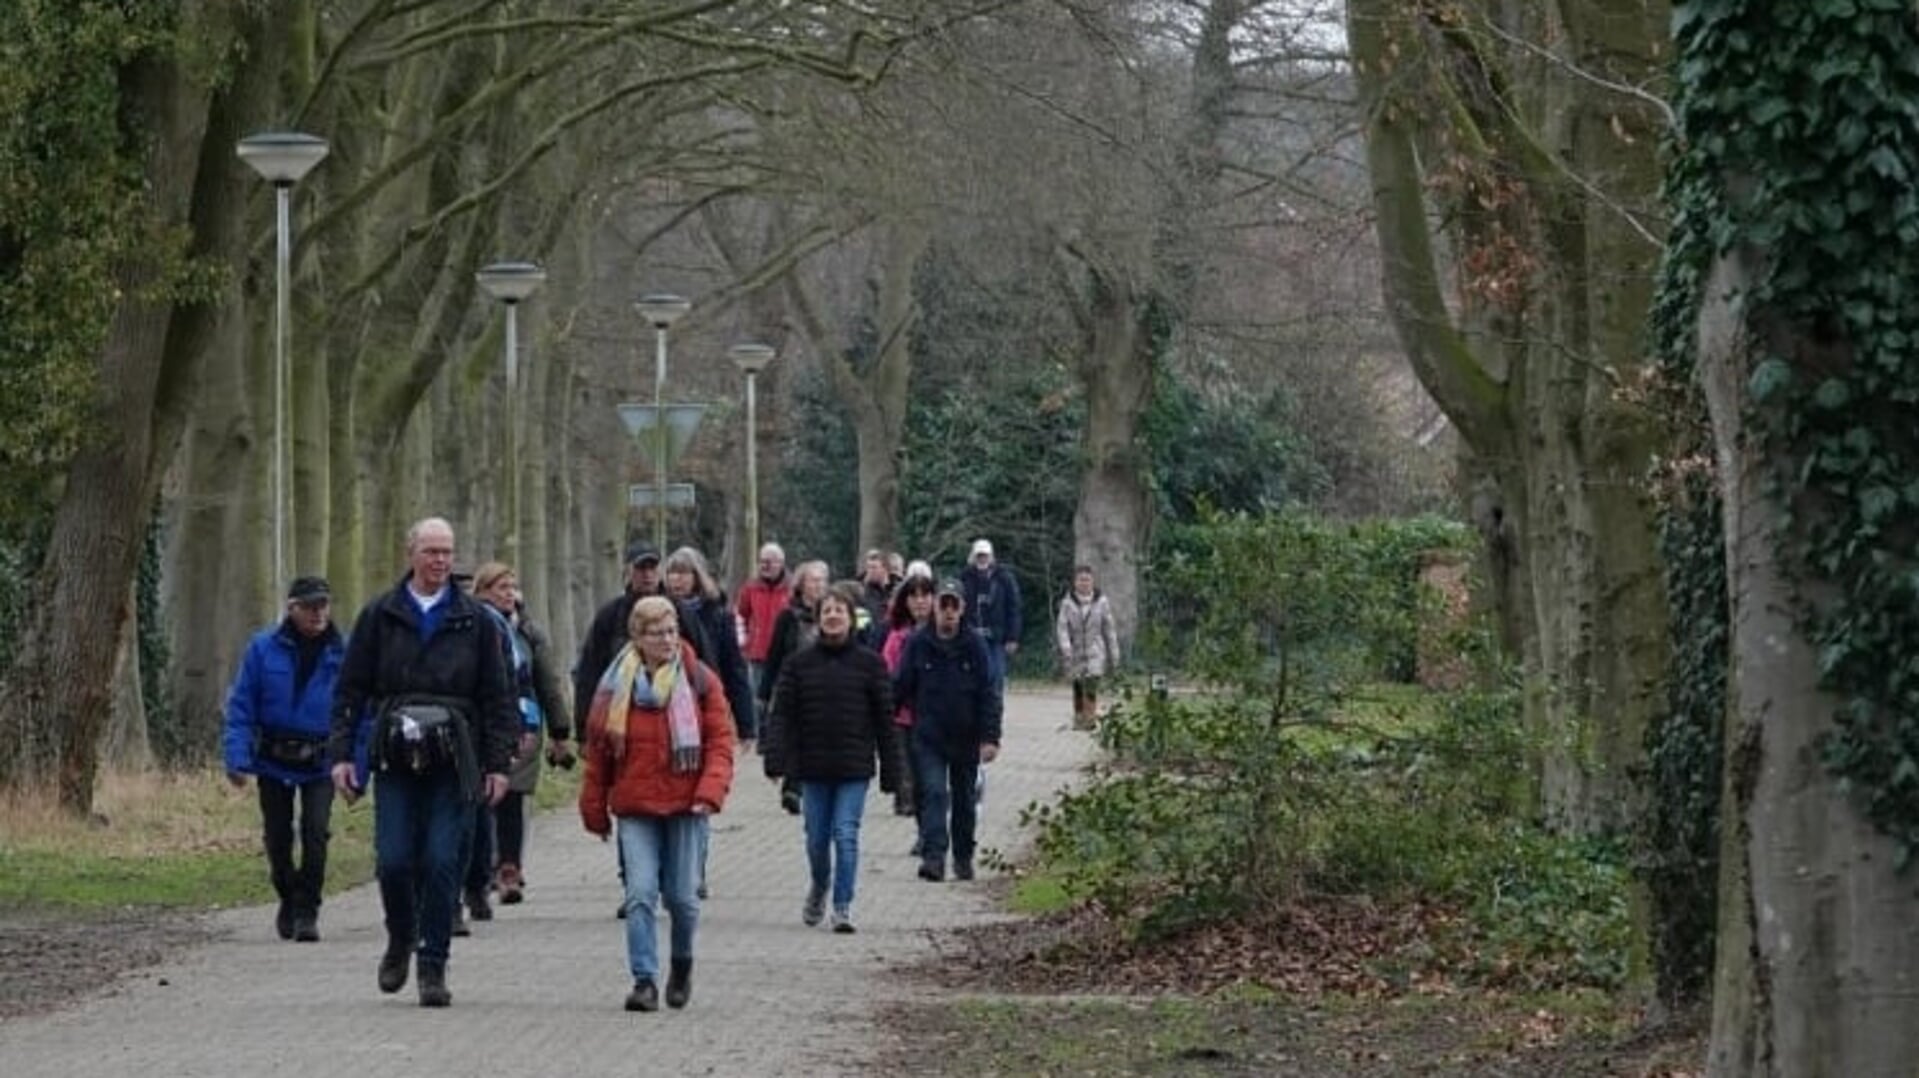 Maar liefst 750 wandelaars gingen zondag van start voor de vierde wandeling uit de serie 'Winter5Maandse. Foto: Achterhoekfoto.nl/Gradus Derksen